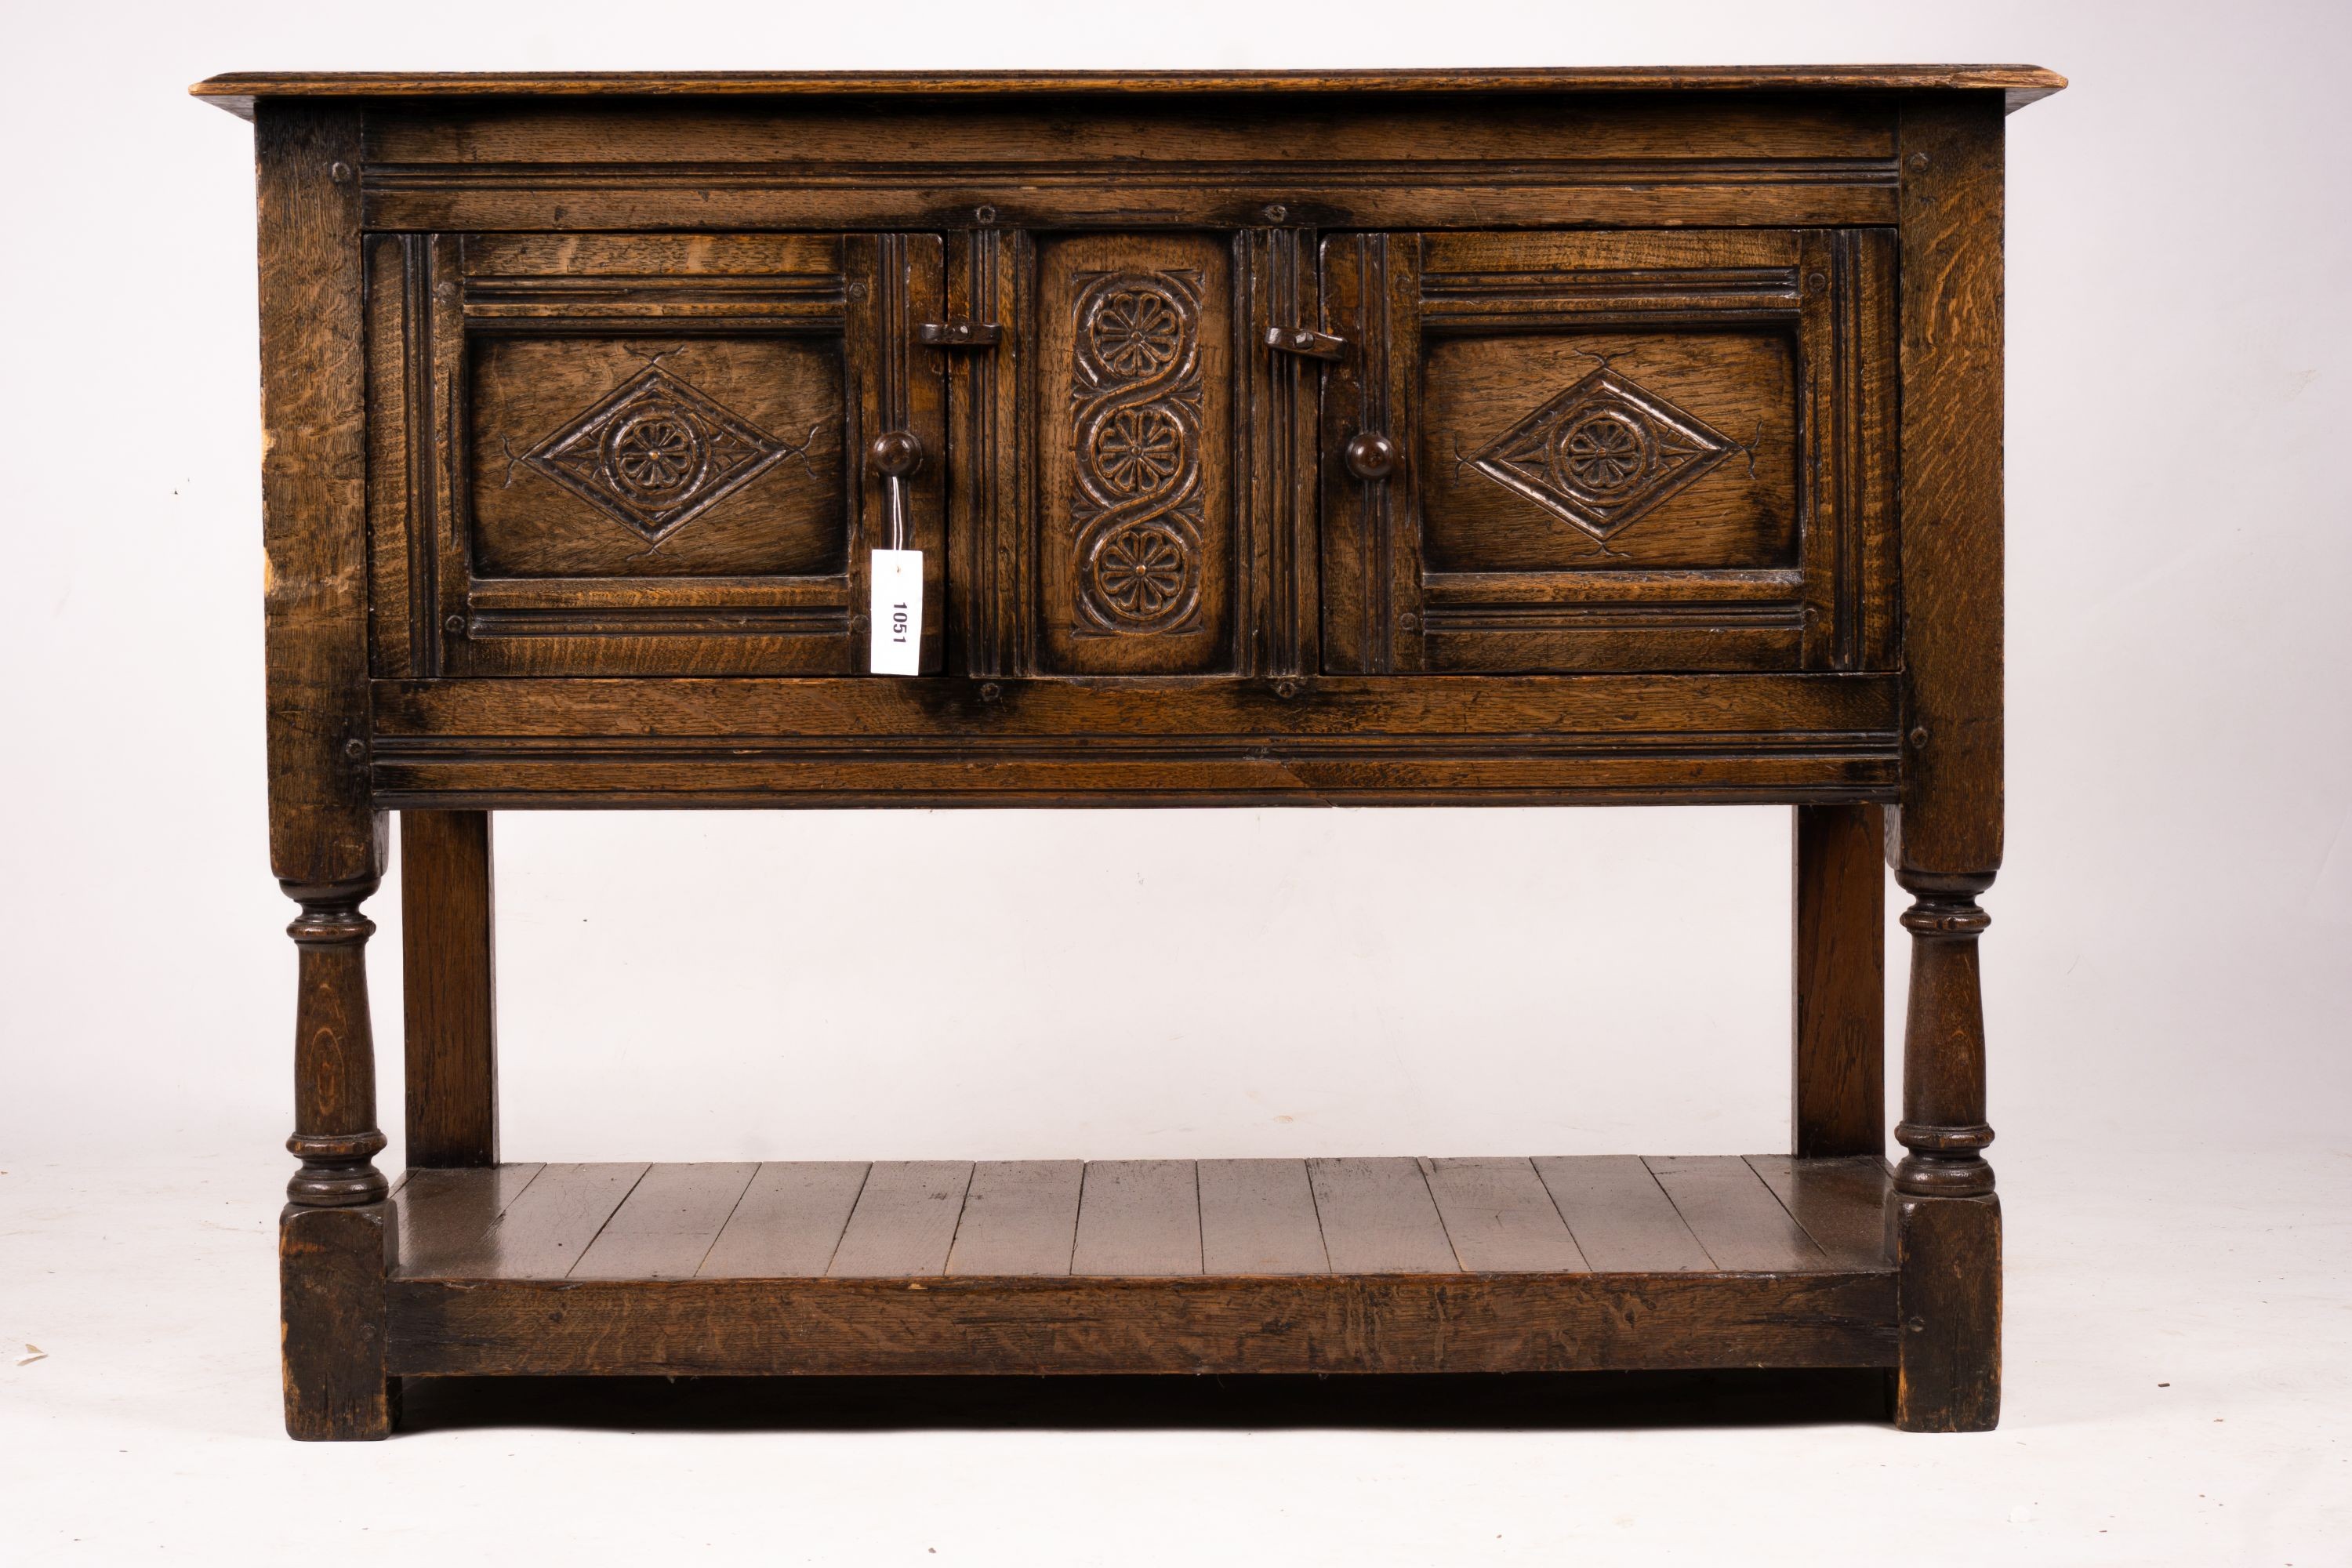 An 18th century style oak two door low cupboard, width 106cm, depth 50cm, height 78cm